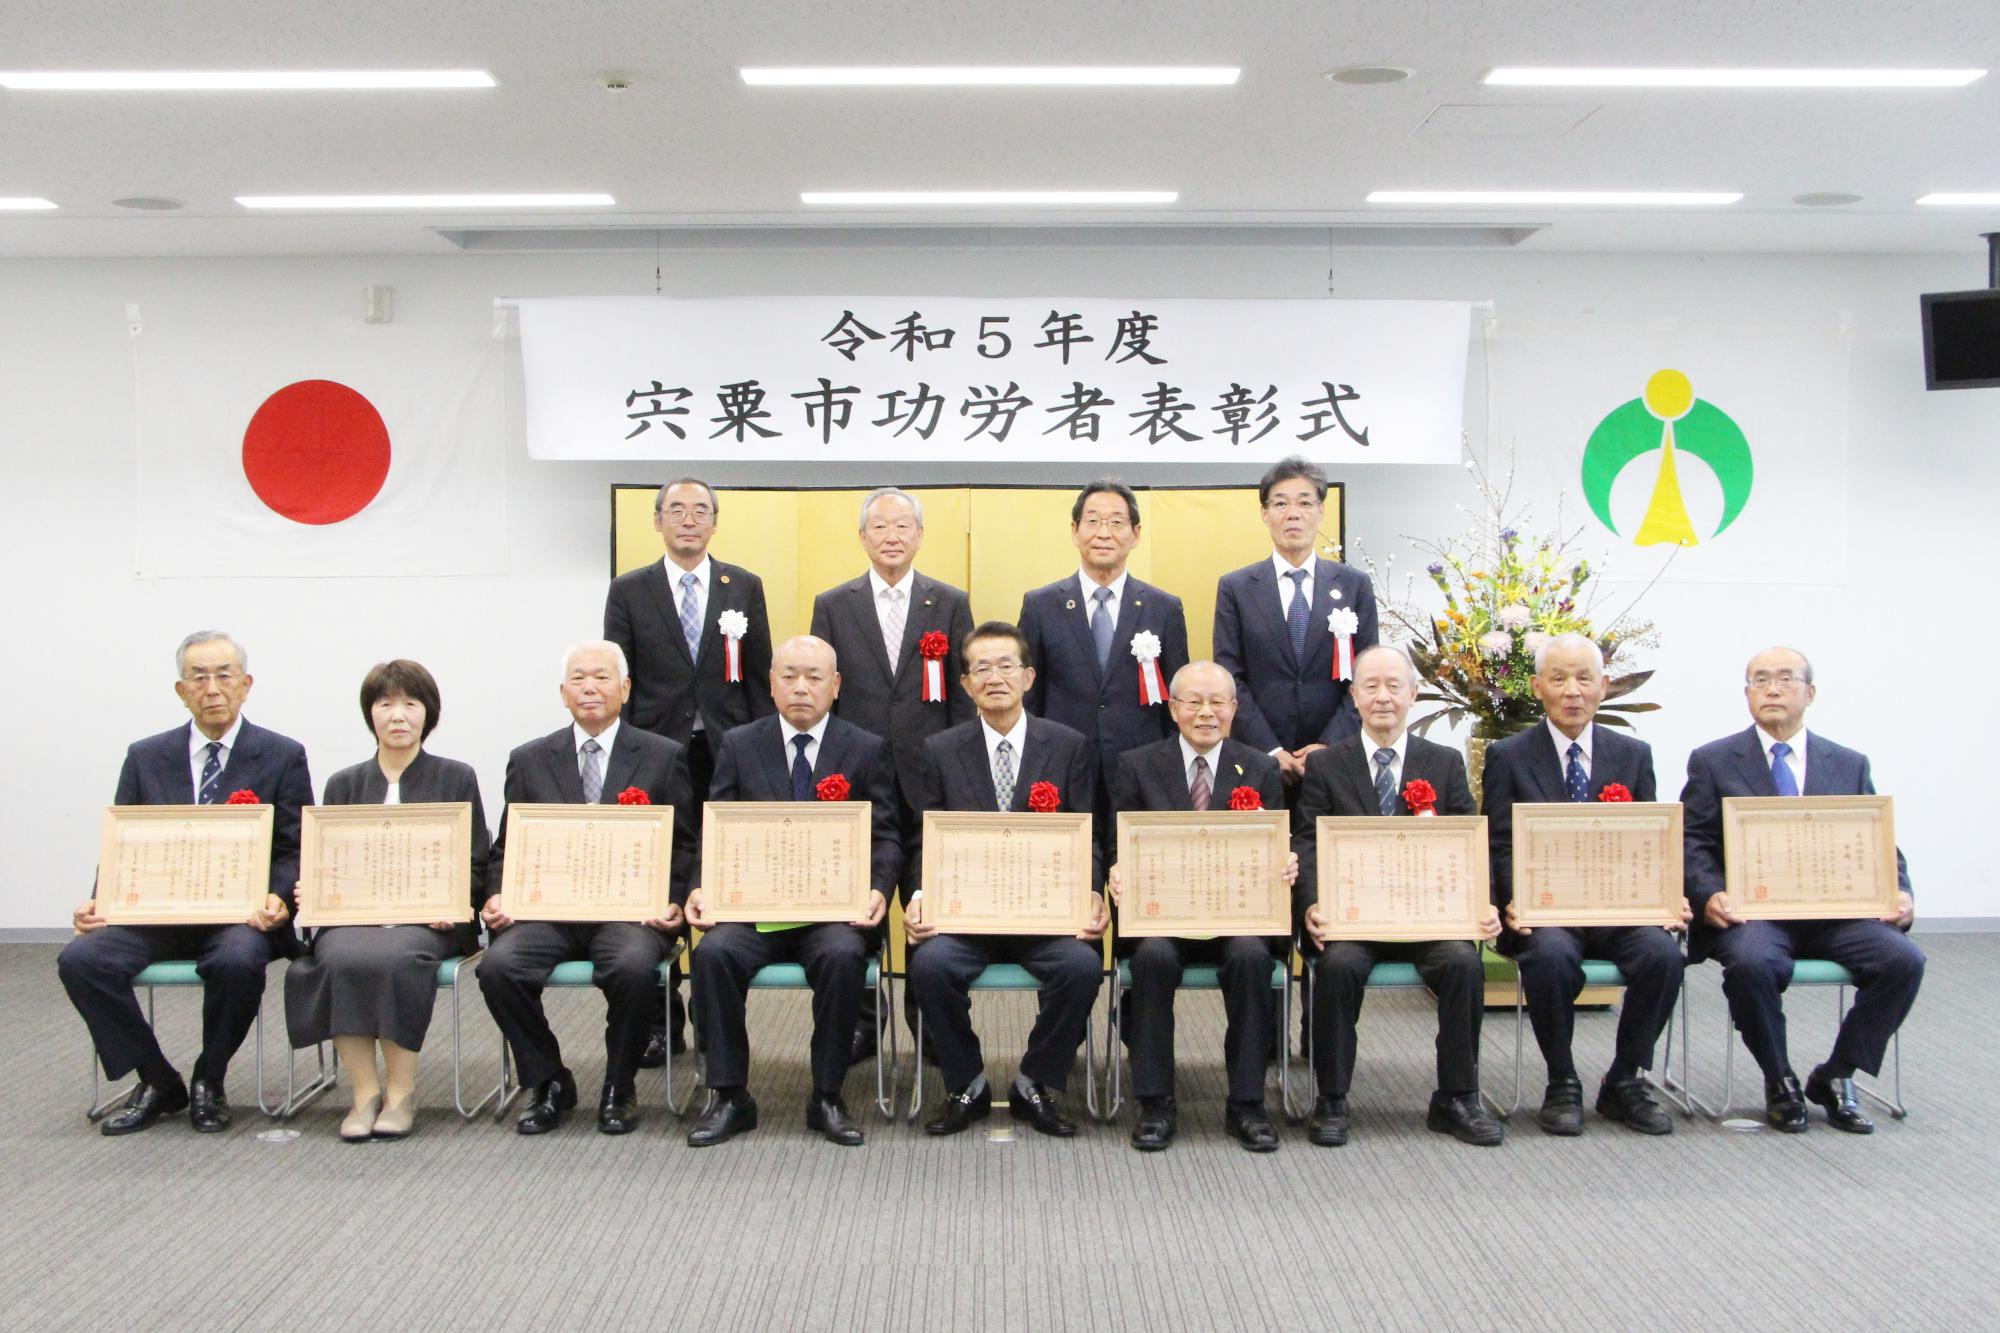 宍粟市功労者表彰式にて受賞者9名と福元市長らとの集合写真